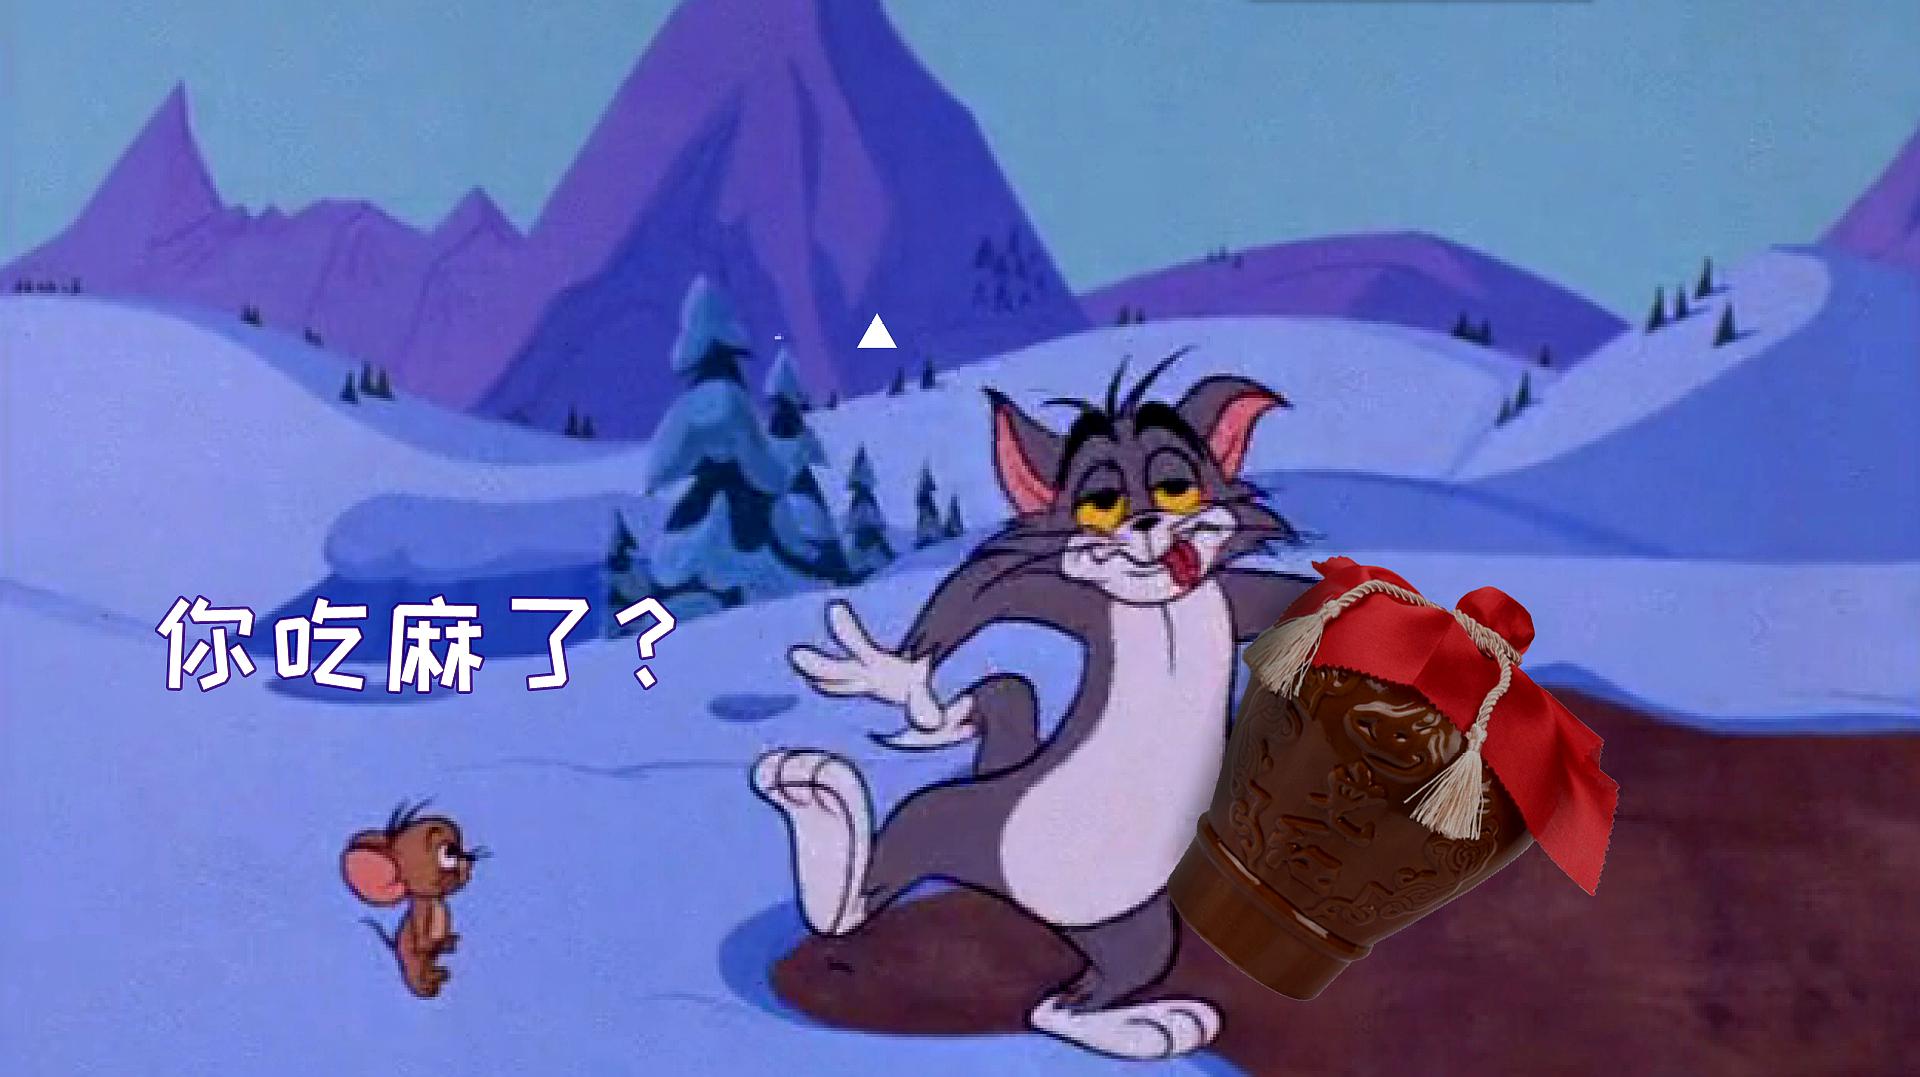 猫和老鼠搞笑四川话:汤姆猫被人灌酒,喝醉了还要打饱嗝!笑了